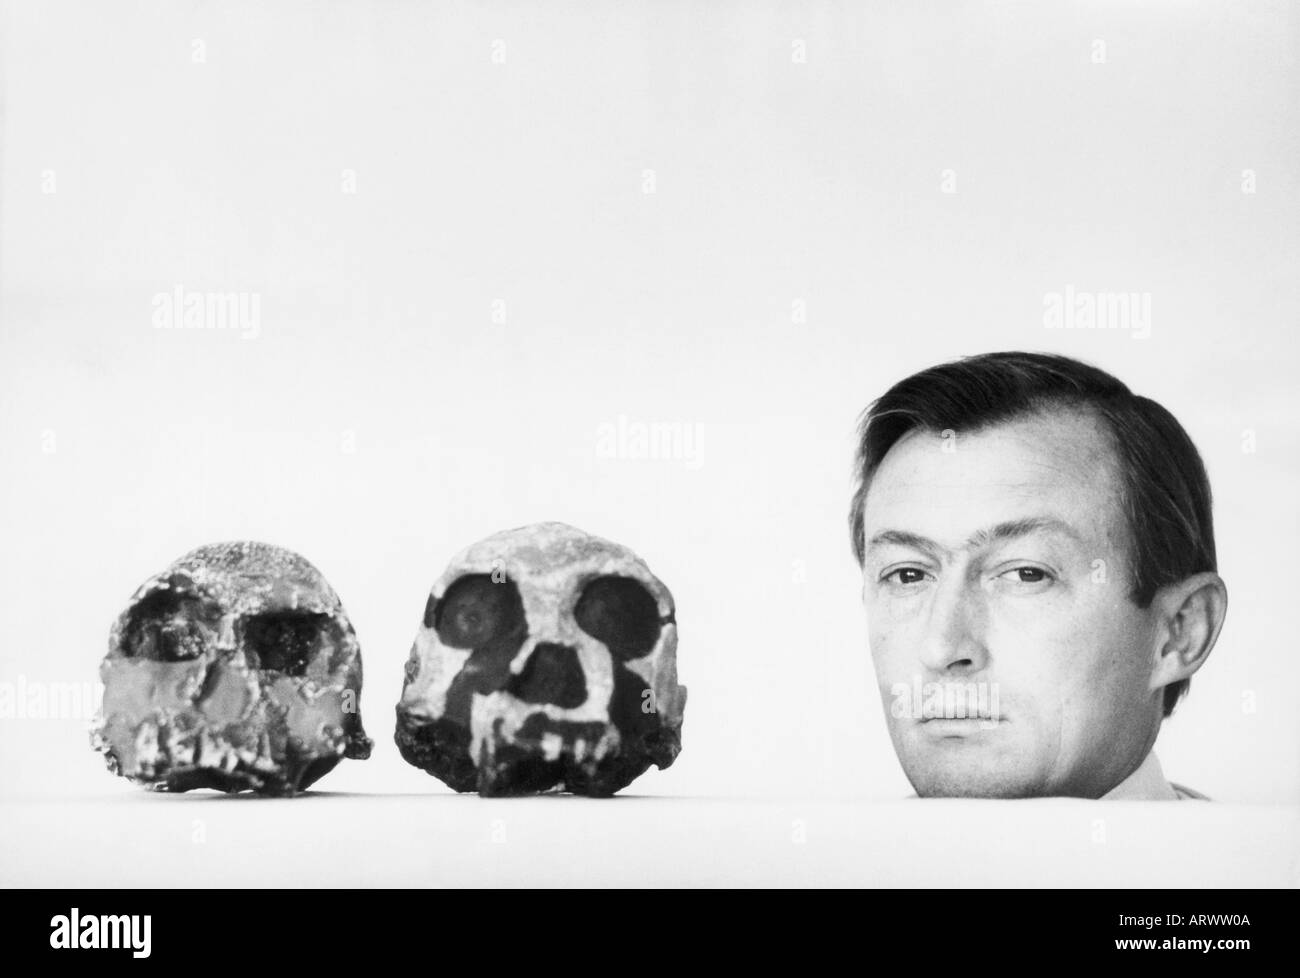 Richard Leakey, nel 1978 già un rinomato paleoanthropologist, pone con due teschi scoperto nella sua ricerca di origine umana Foto Stock